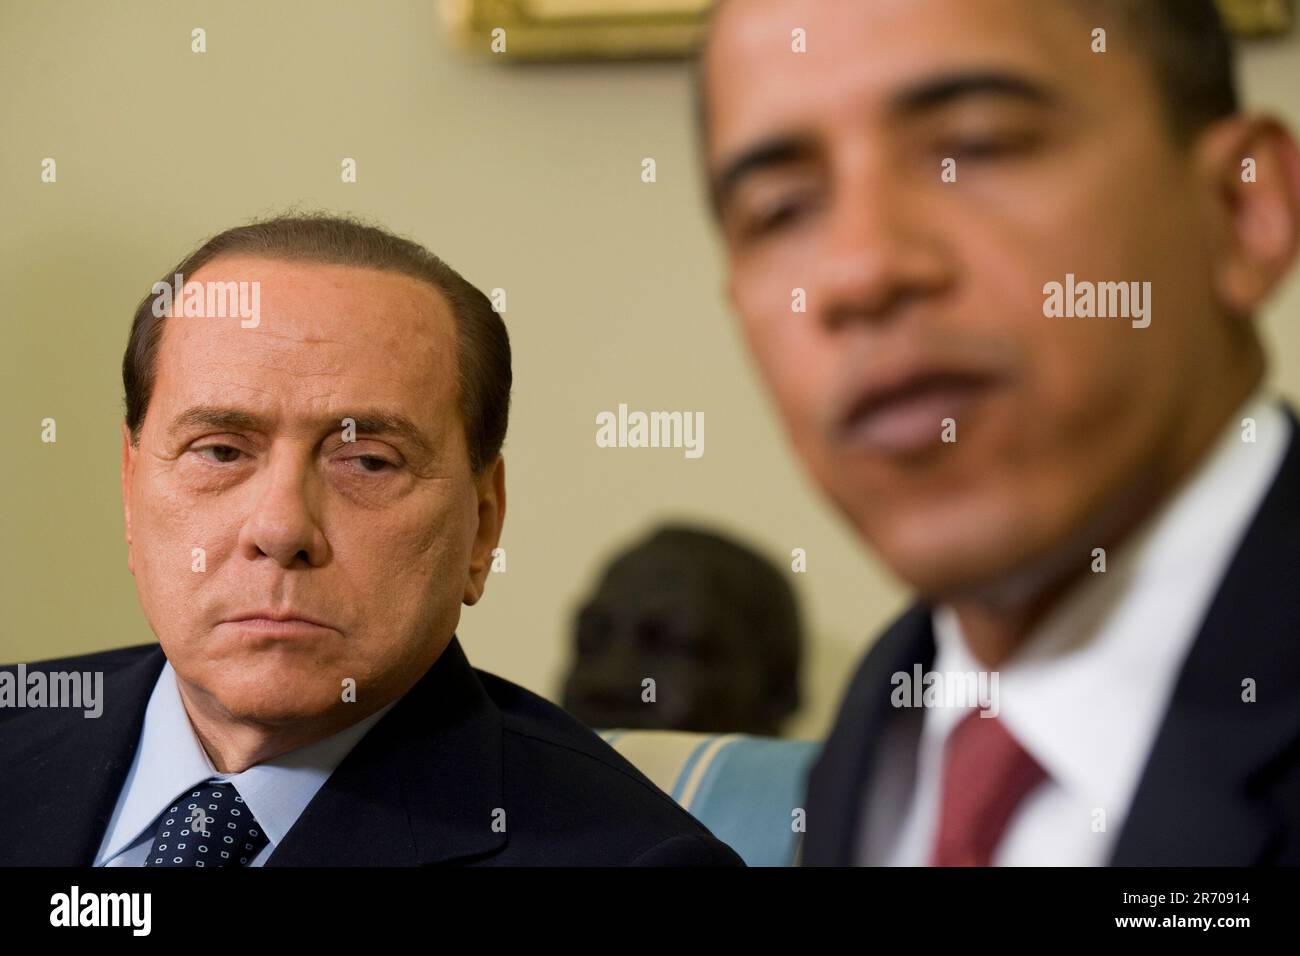 Washington, DC - 15. Juni 2009 -- Premierminister Silvio Berlusconi (L) betrachtet US-Präsident Barack Obama während eines Treffens im Oval Office des Weißen Hauses am Montag, 15. Juni 2009. Die beiden Staats- und Regierungschefs trafen sich im Vorfeld des G8-Gipfels, der nächsten Monat in Italien stattfinden wird.Kredit: Matthew Cavanaugh - Pool über CNP Stockfoto